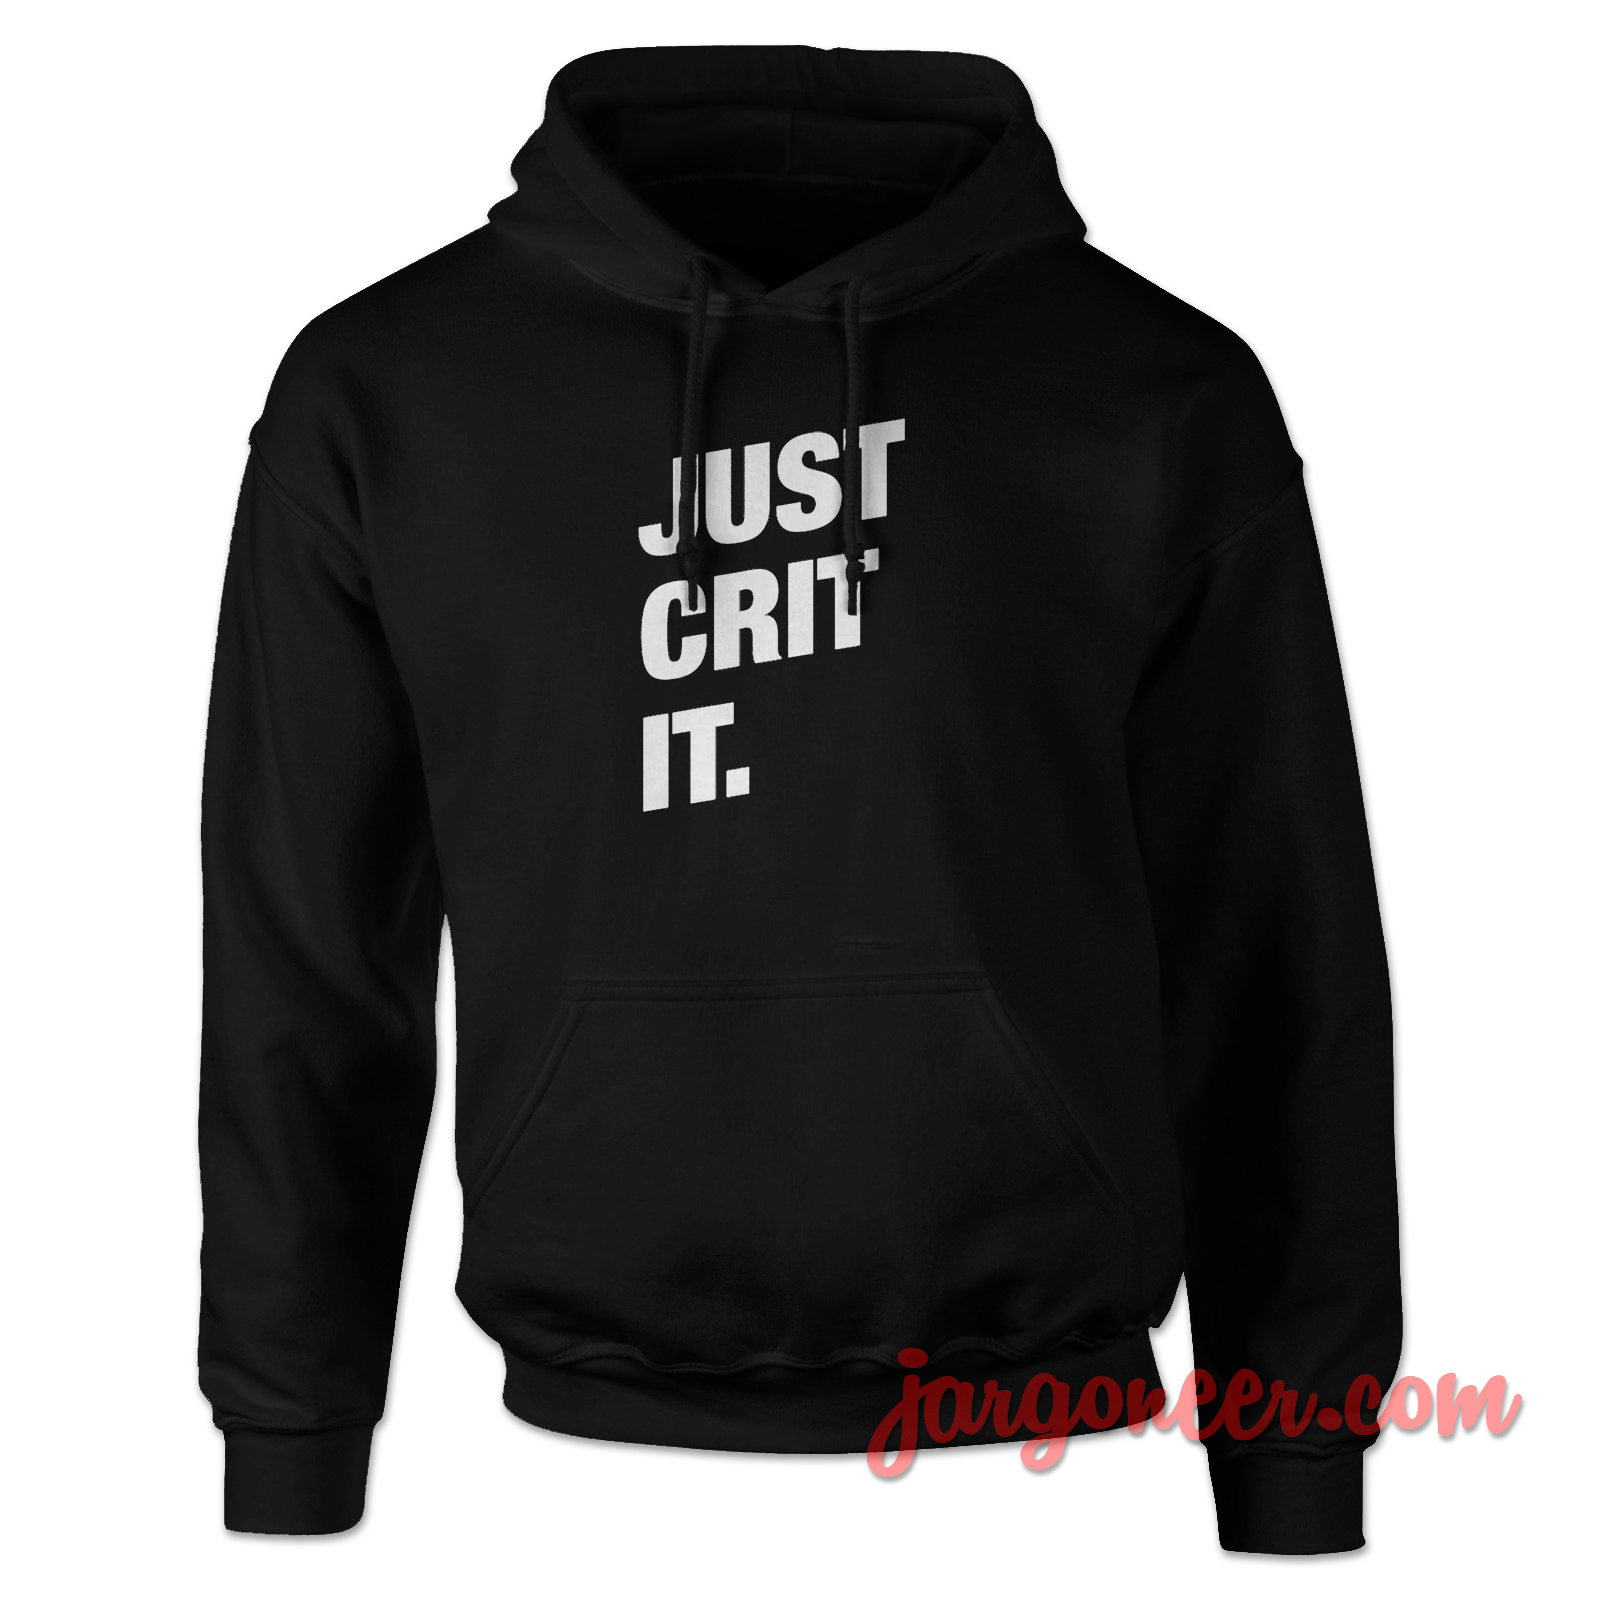 Just Crit It - Shop Unique Graphic Cool Shirt Designs